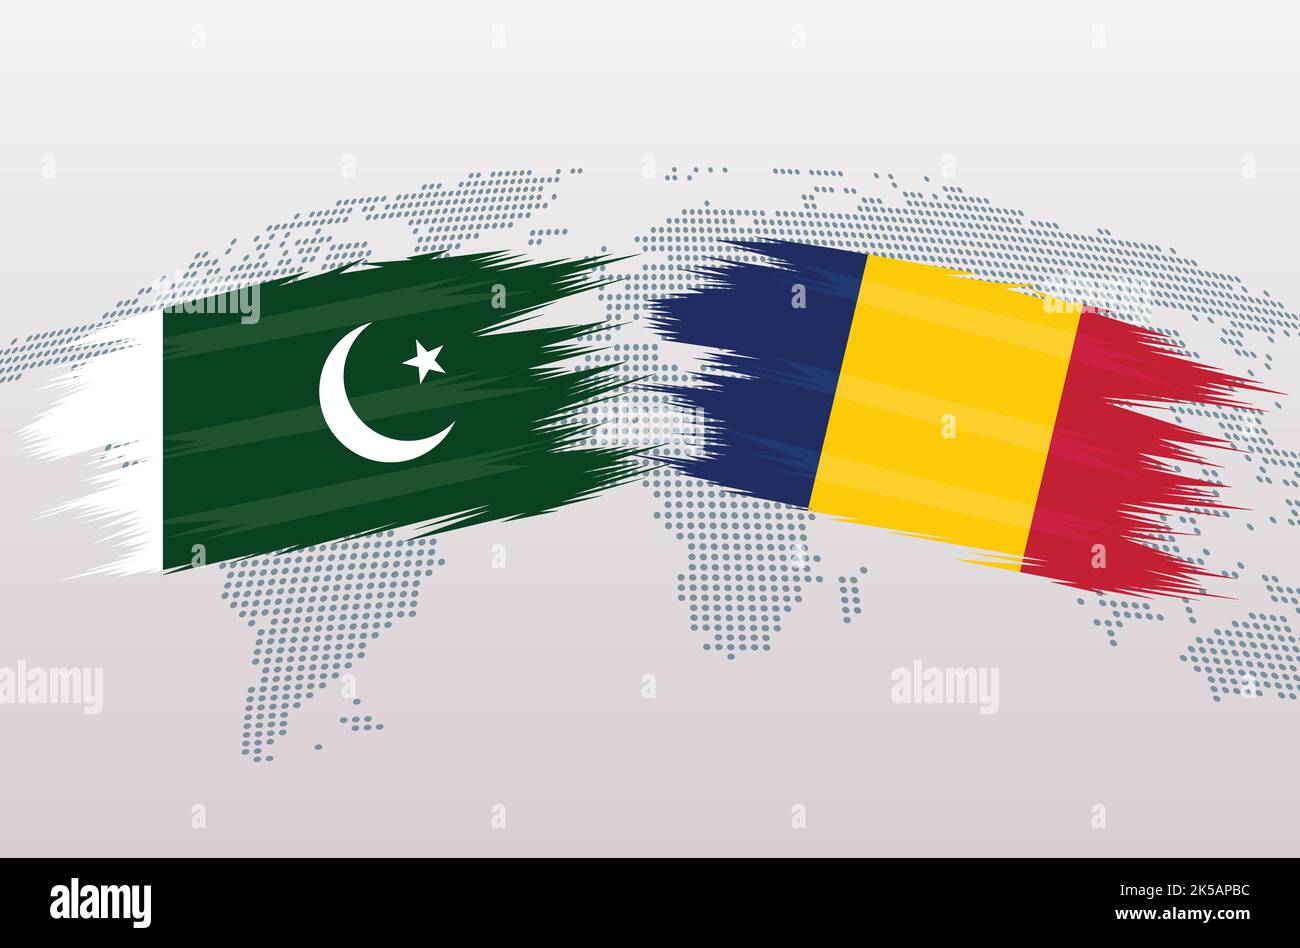 Bandiere del Pakistan vs Ciad. Bandiera della Repubblica Islamica del Pakistan contro il Ciad, isolata su sfondo grigio della mappa del mondo. Illustrazione vettoriale. Illustrazione Vettoriale